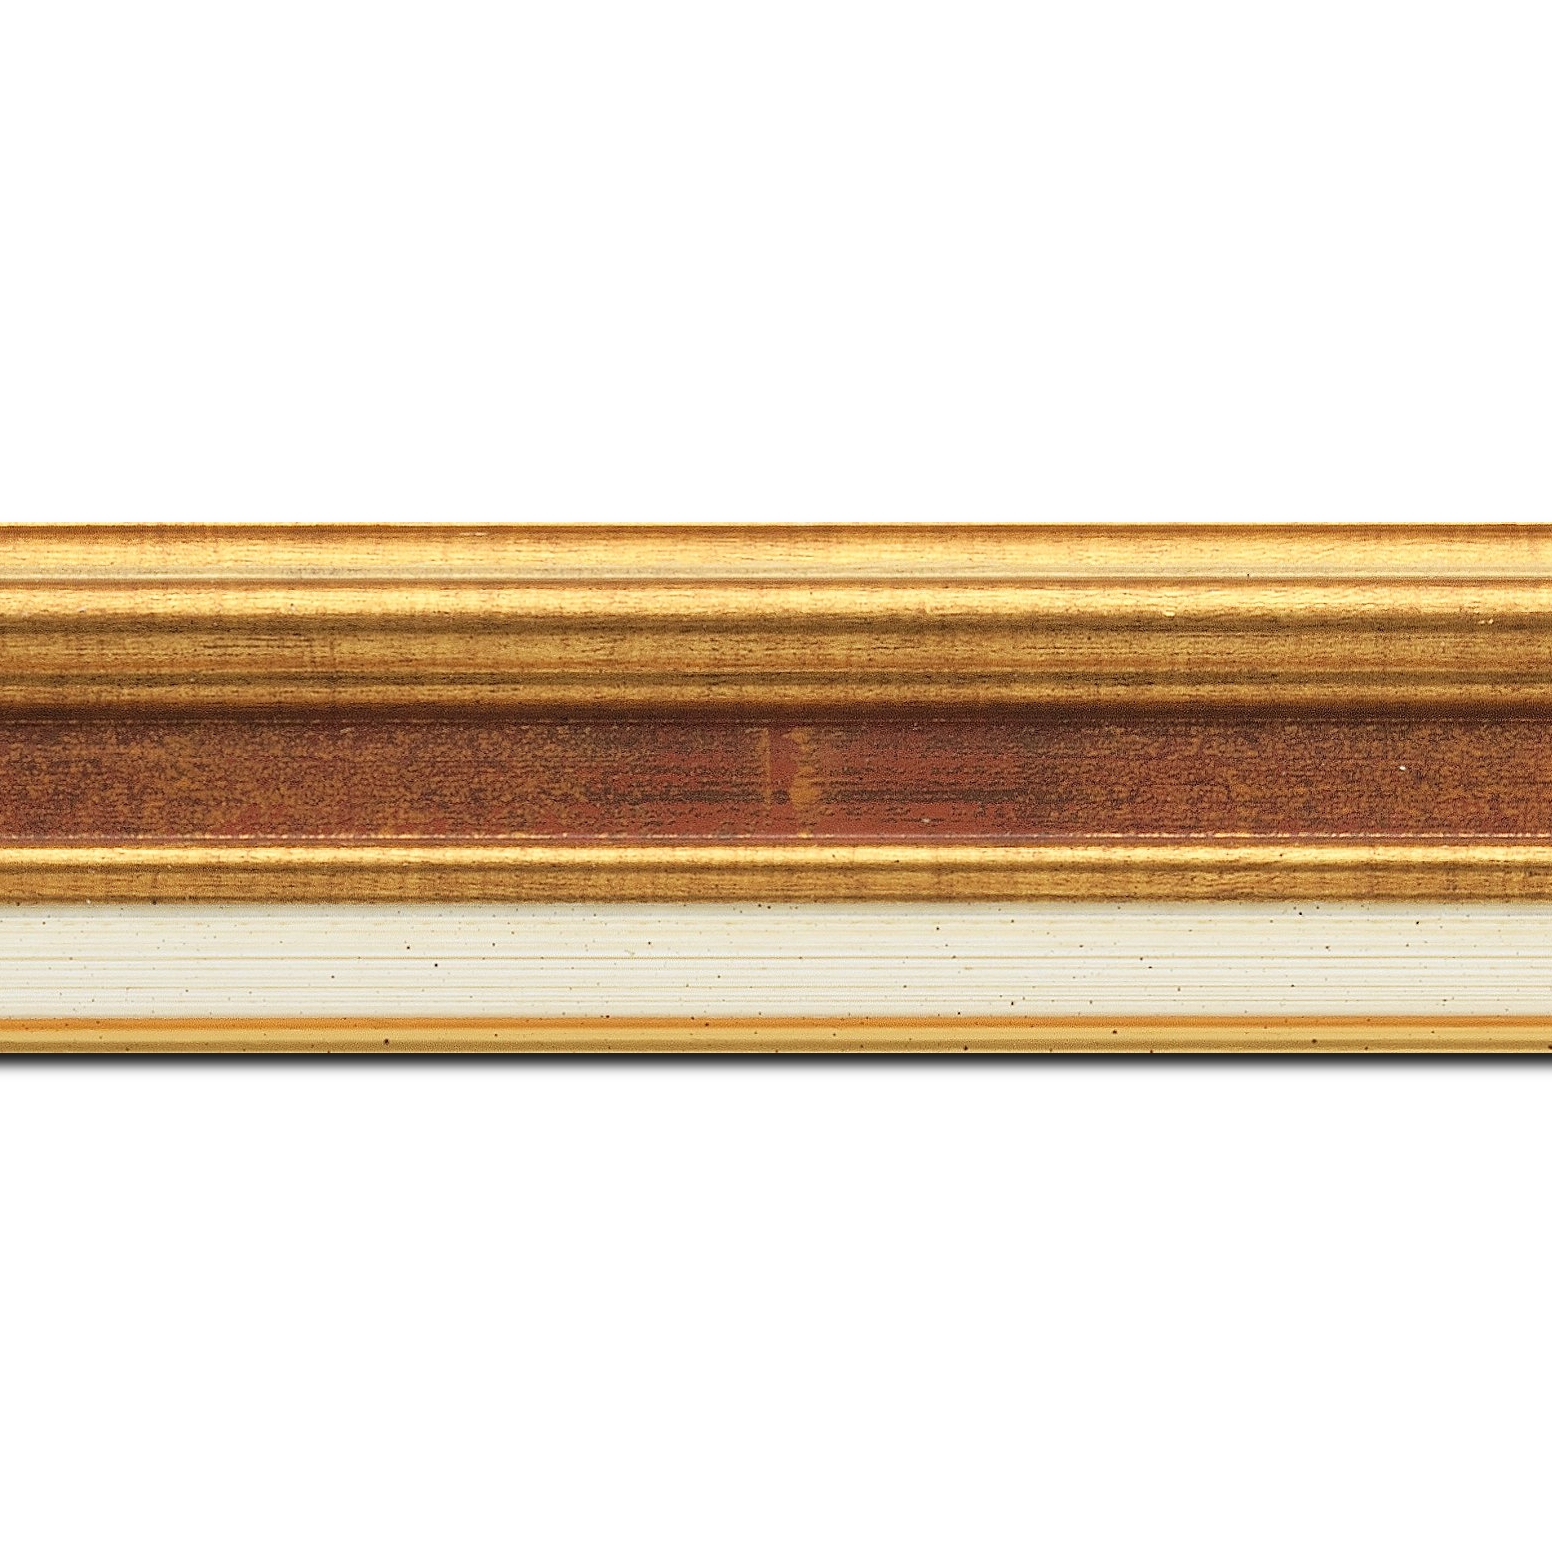 Baguette longueur 1.40m bois largeur 5.2cm or gorge bordeaux fond or marie louise crème filet or intégrée